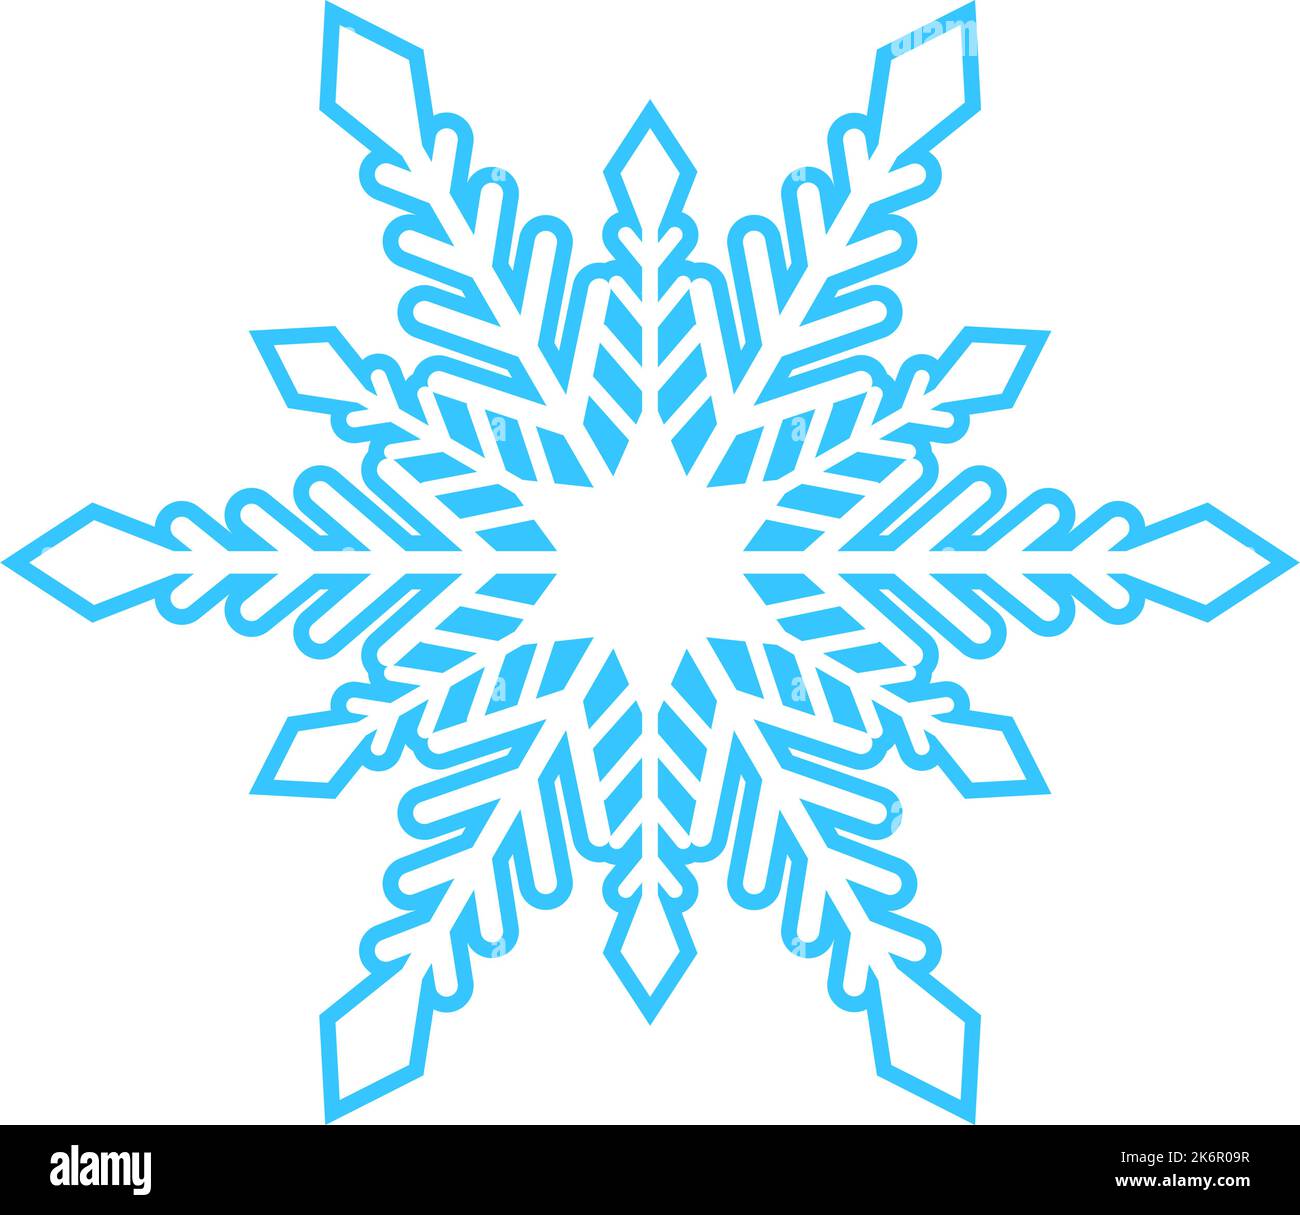 Einfache Schneeflocke aus blauen Linien. Festliche Dekoration für Neujahr und Weihnachten, Symbol des Winters, Element für Design. Vektorgrafik Stock Vektor